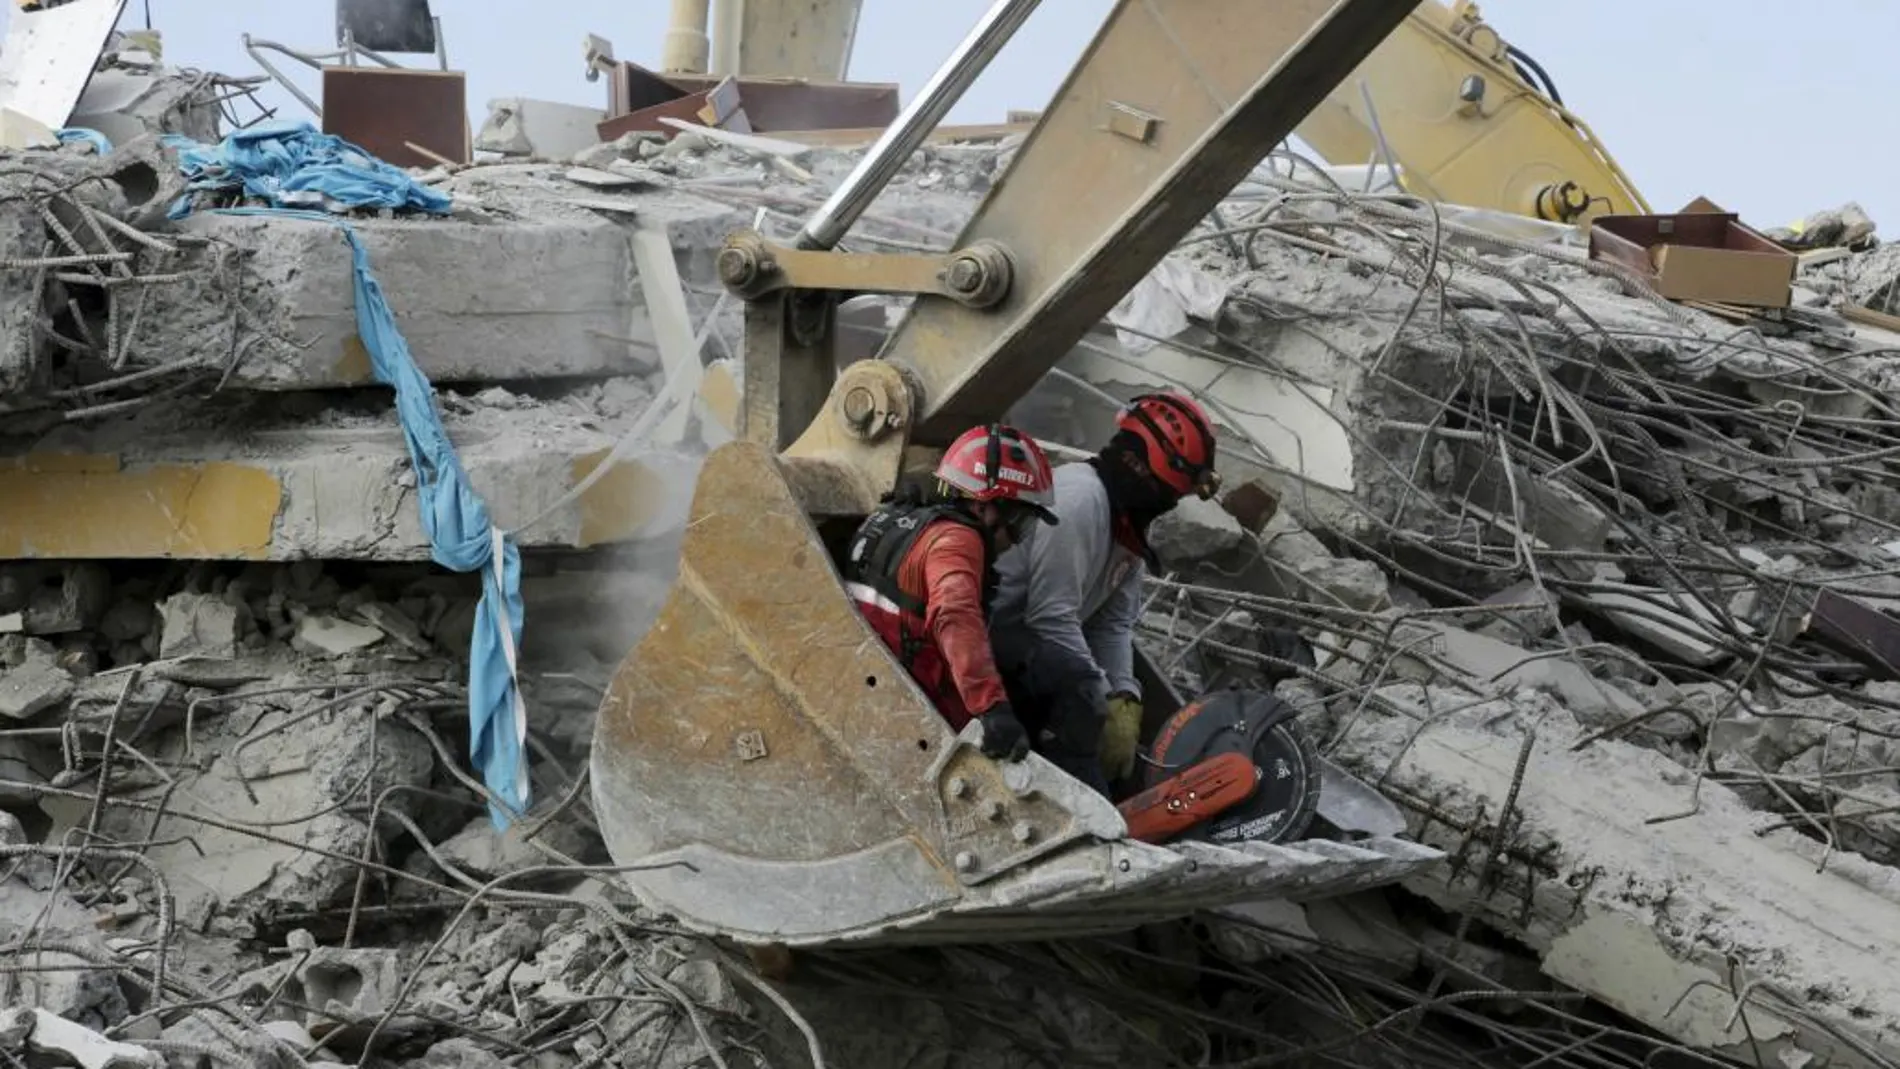 Labores de rescate en un hotel destruido por el terremoto en Pedernales